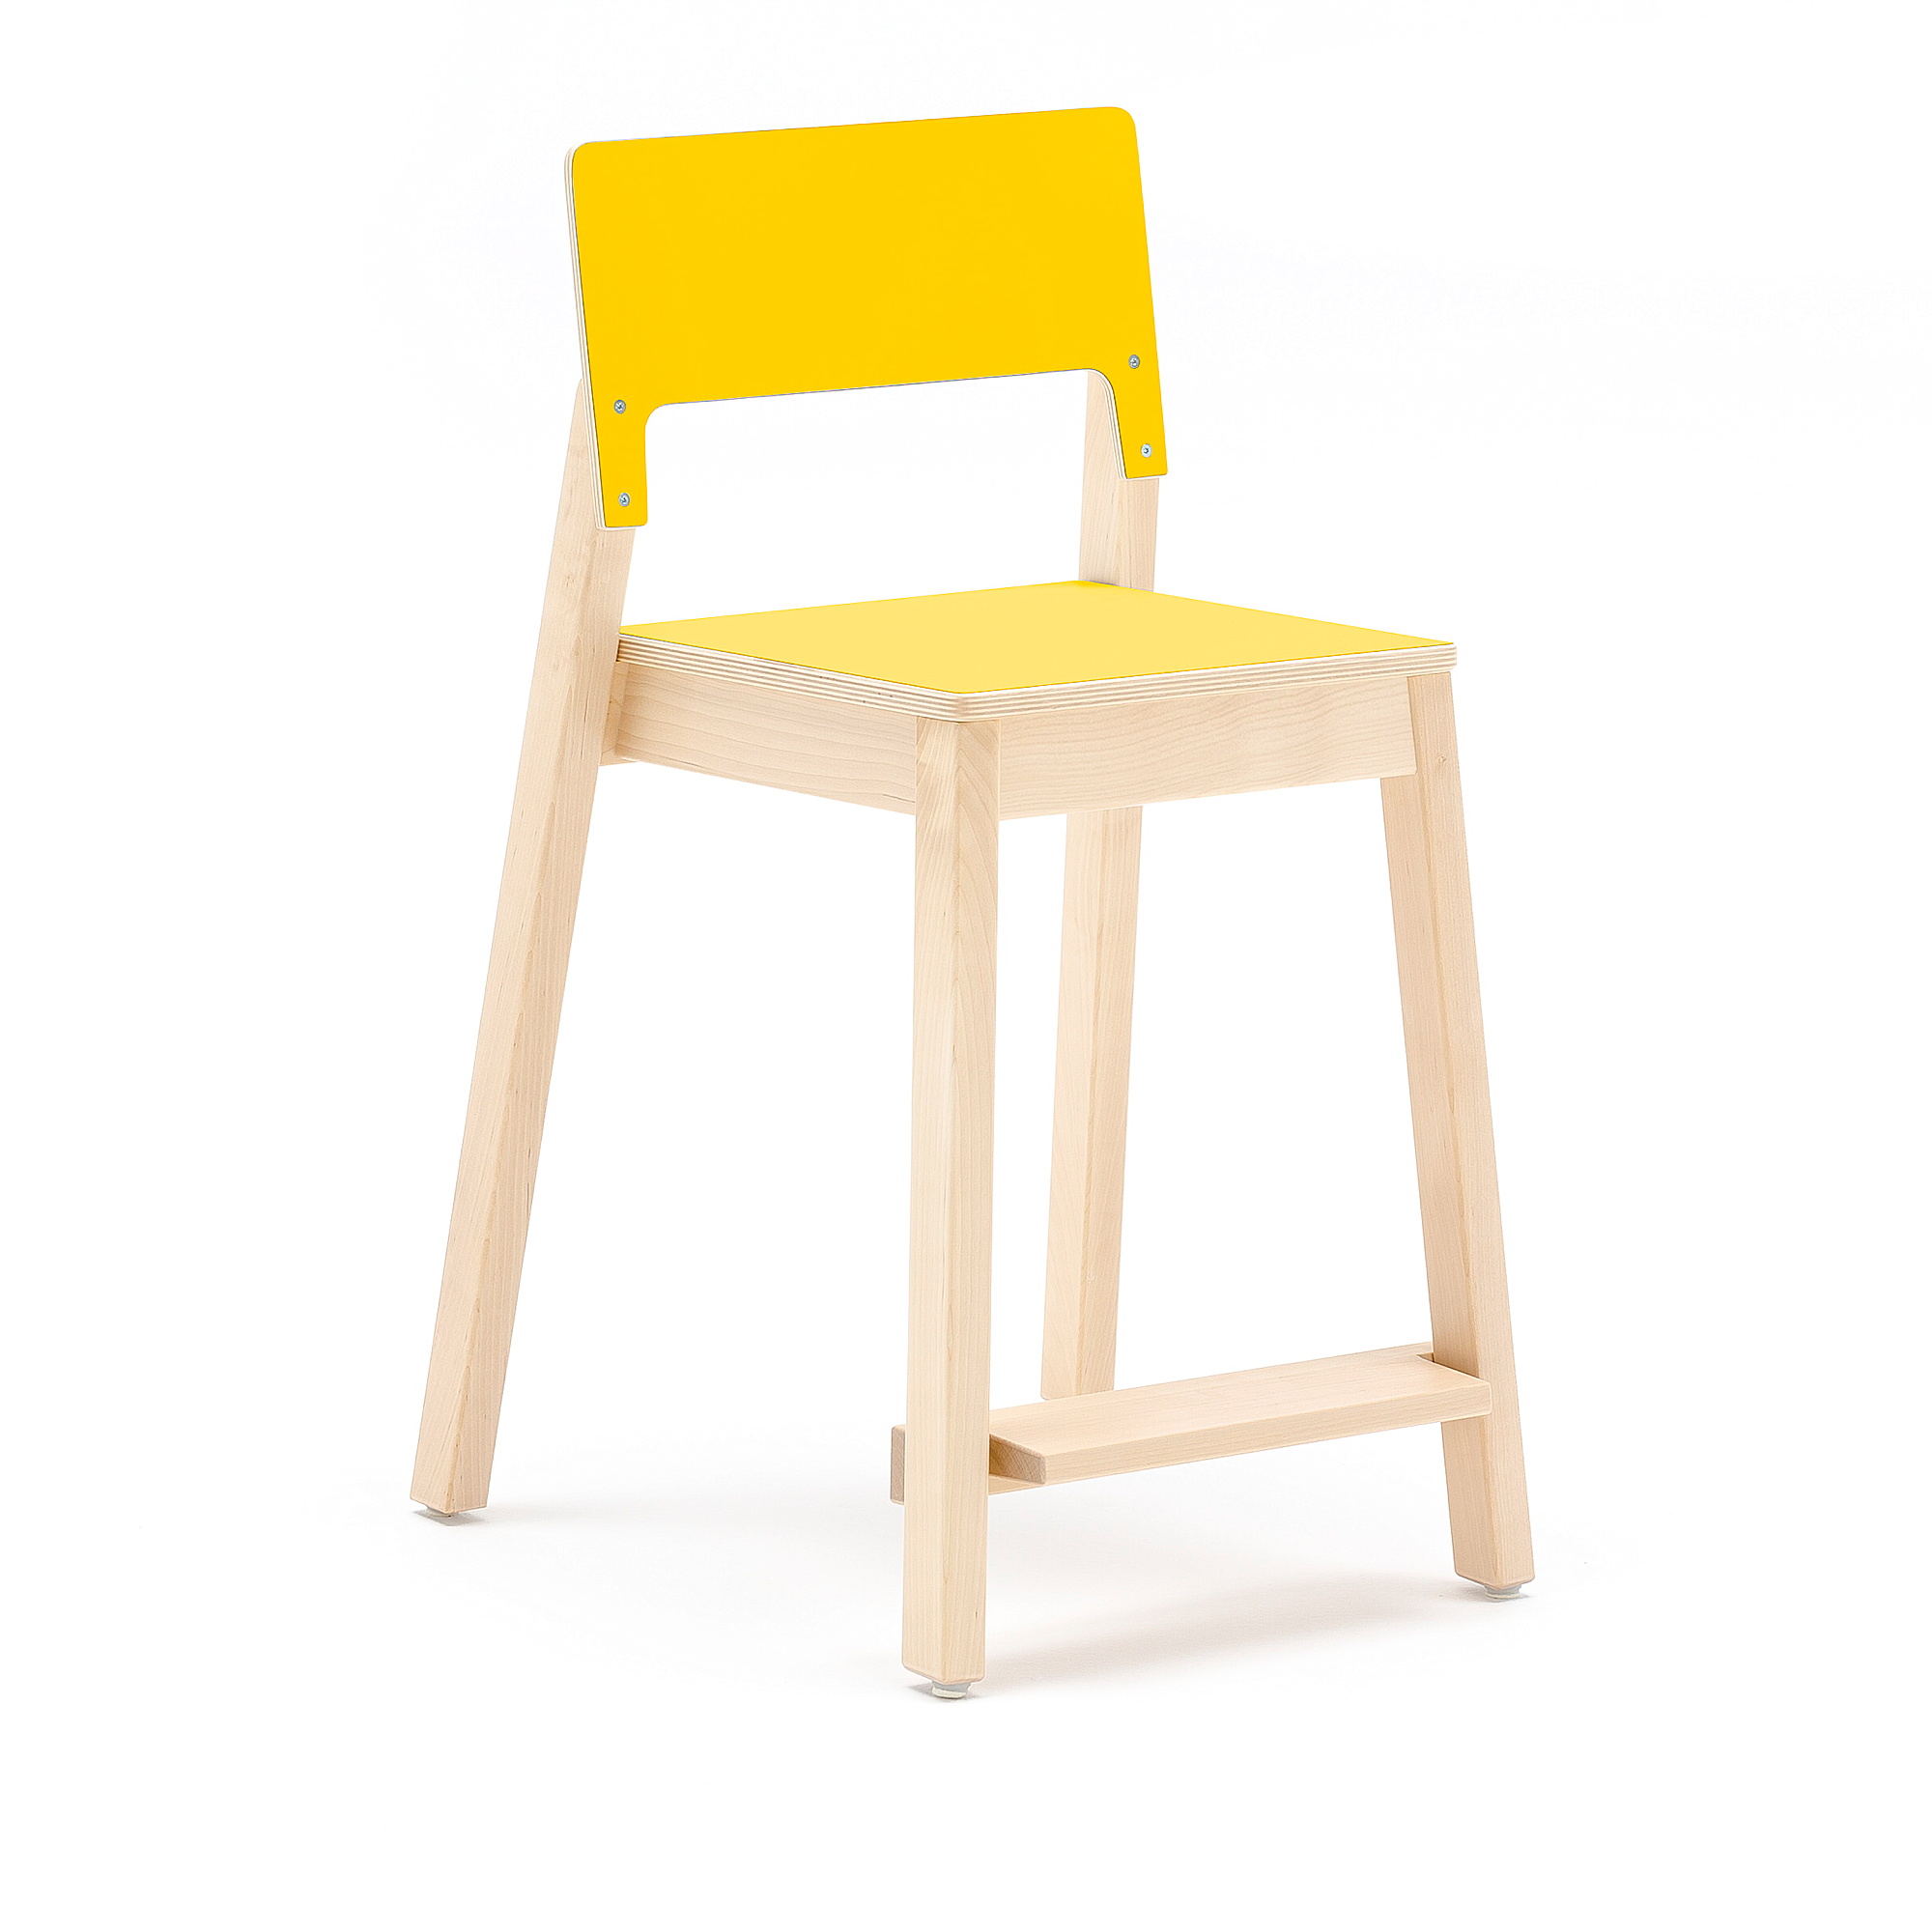 Vysoká dětská židle LOVE, výška 500 mm, bříza, žlutá